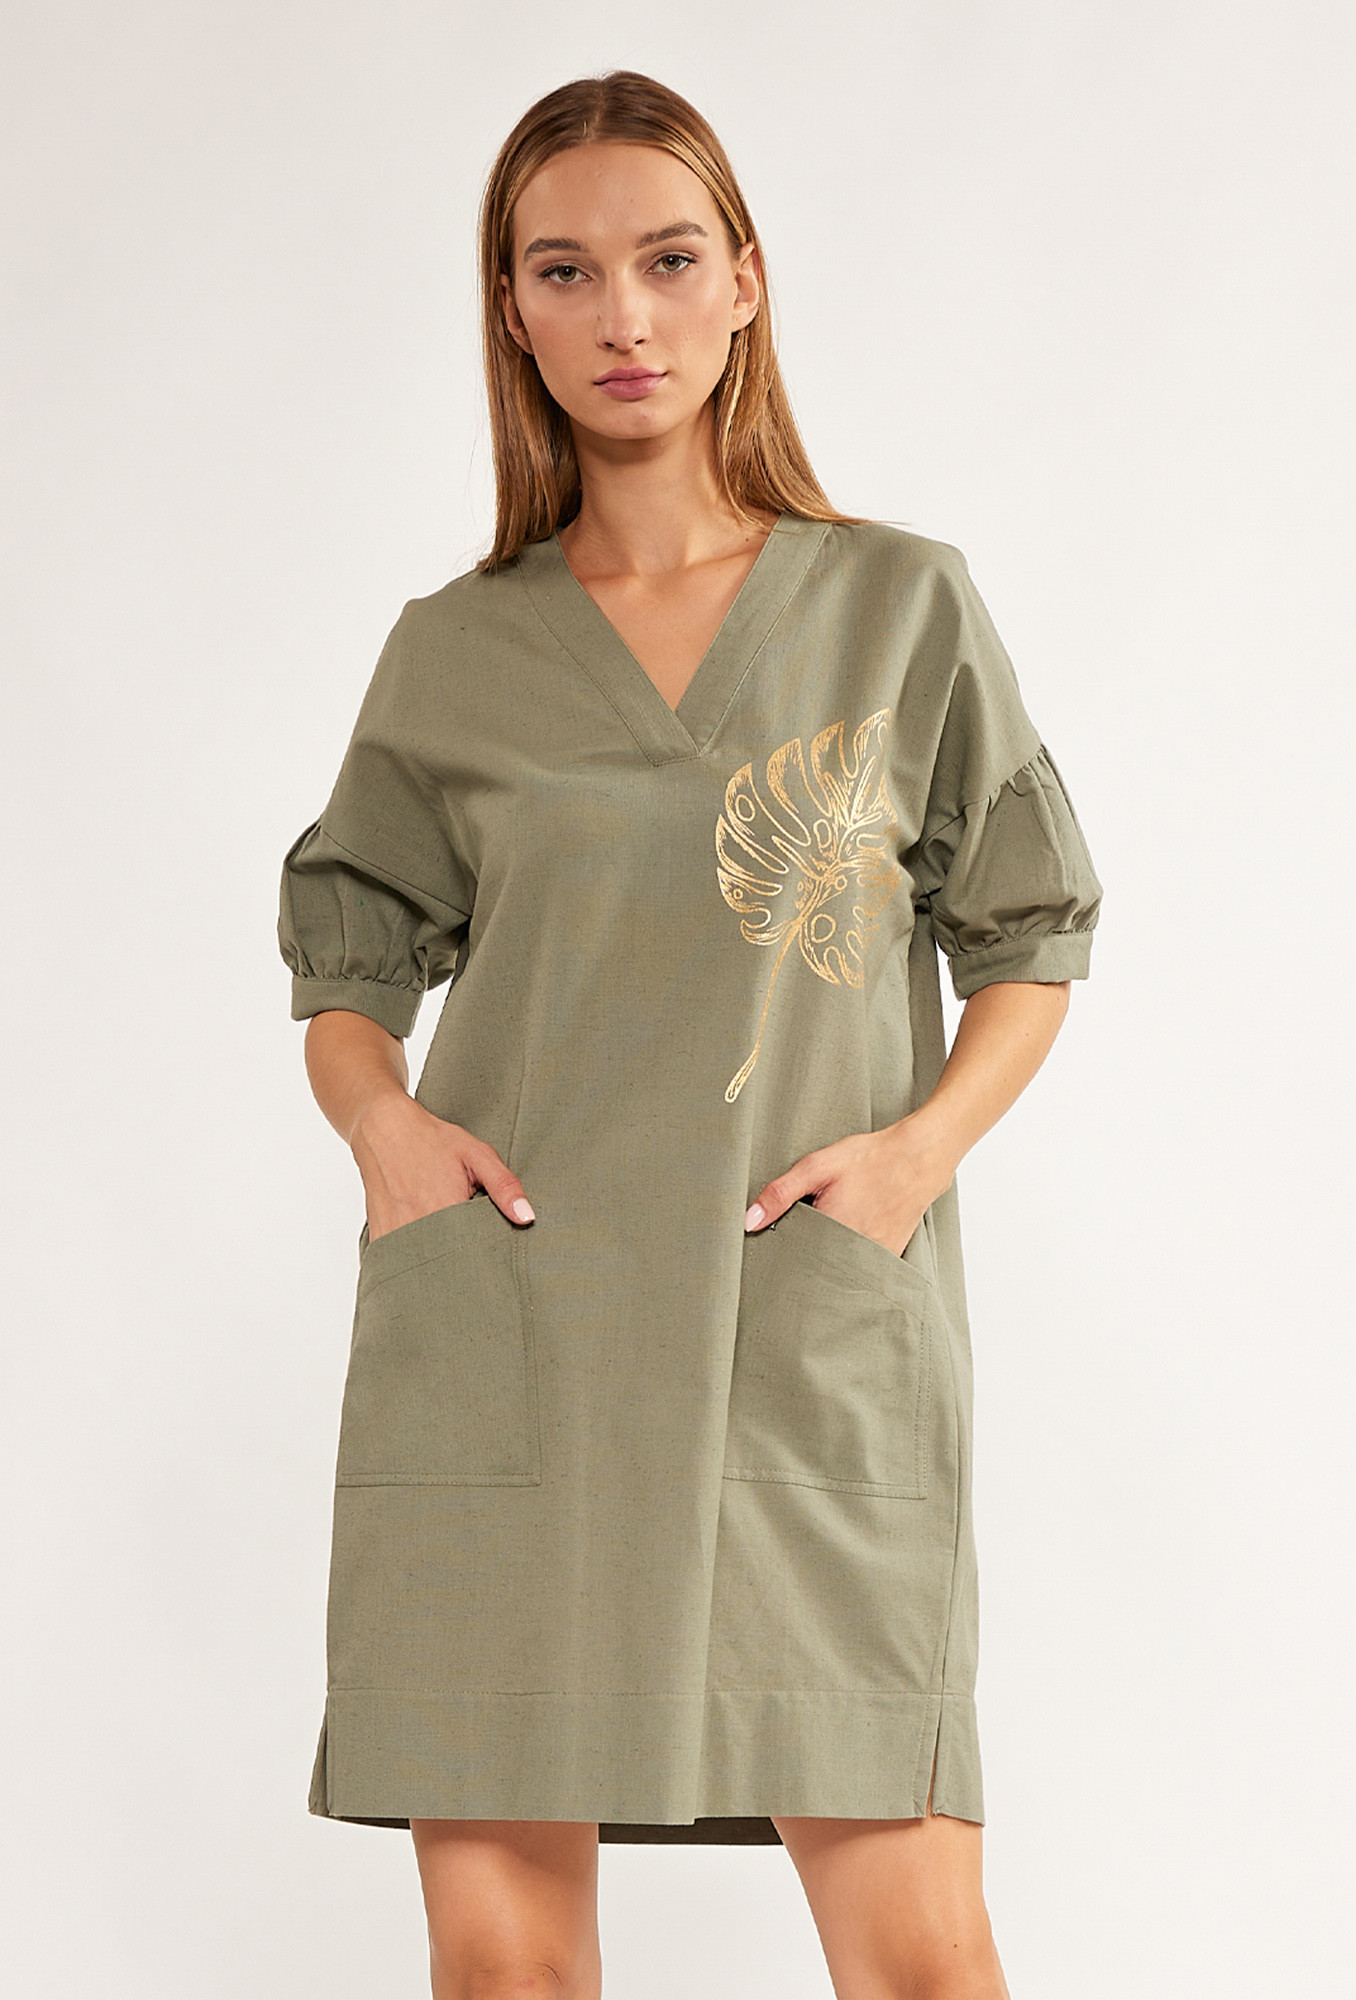 Monnari Šaty Mini šaty s ozdobným vzorem Bottle Green 42